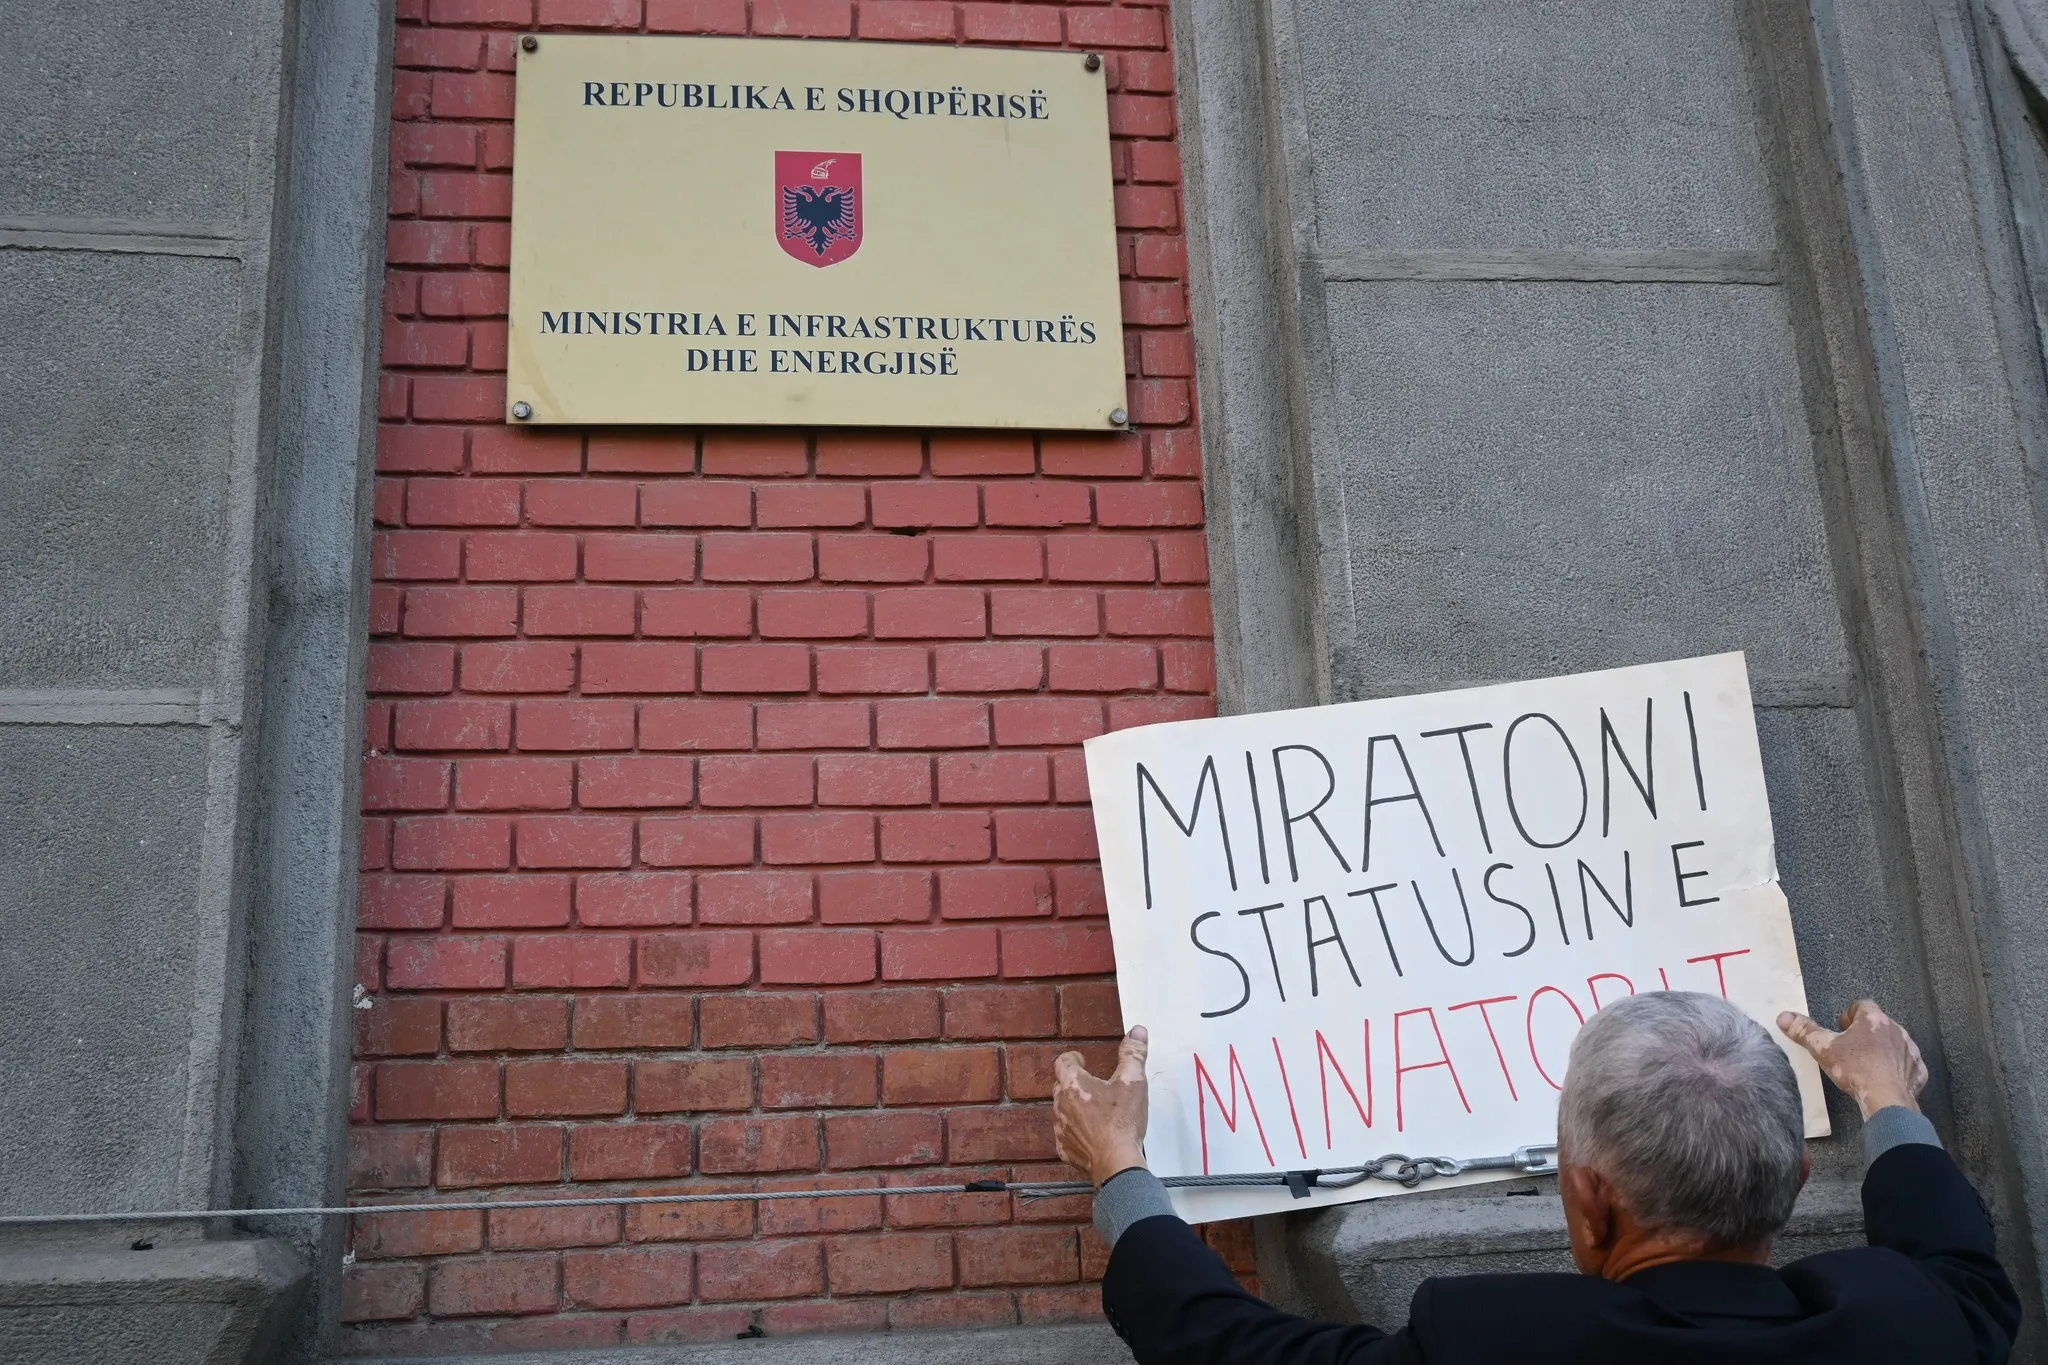 Nje minator duke vendosur nje pankarte qe shkruan 'Miartoni Statisin e Minatorit' te Ministria e Infrastuktures dhe Energjitikes